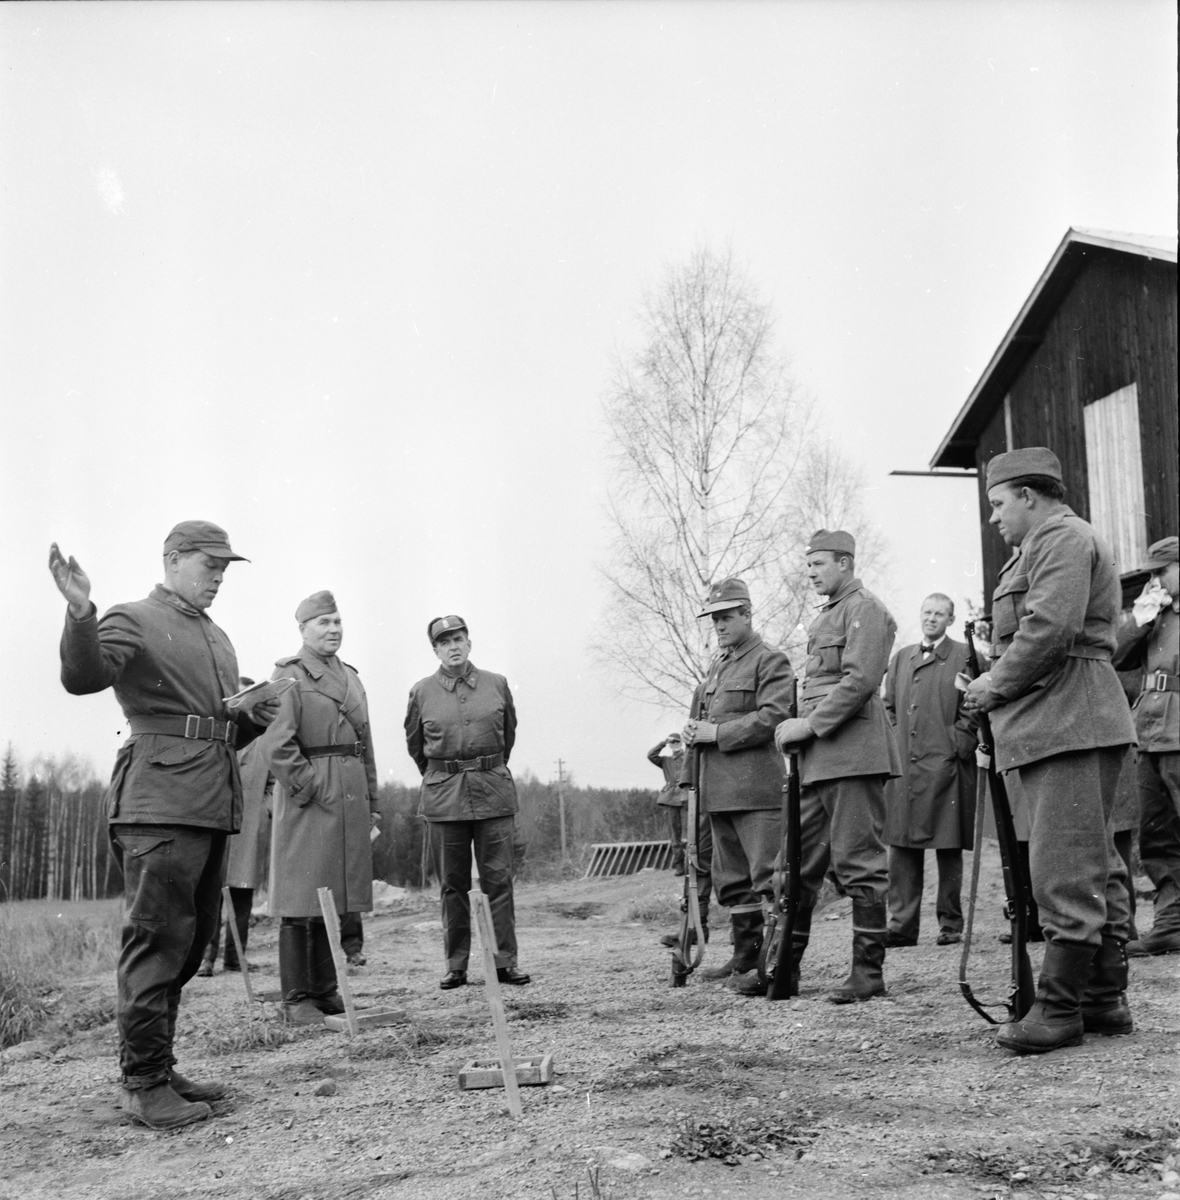 Driftvärnsövning,
Bollegården,
24 Oktober 1963